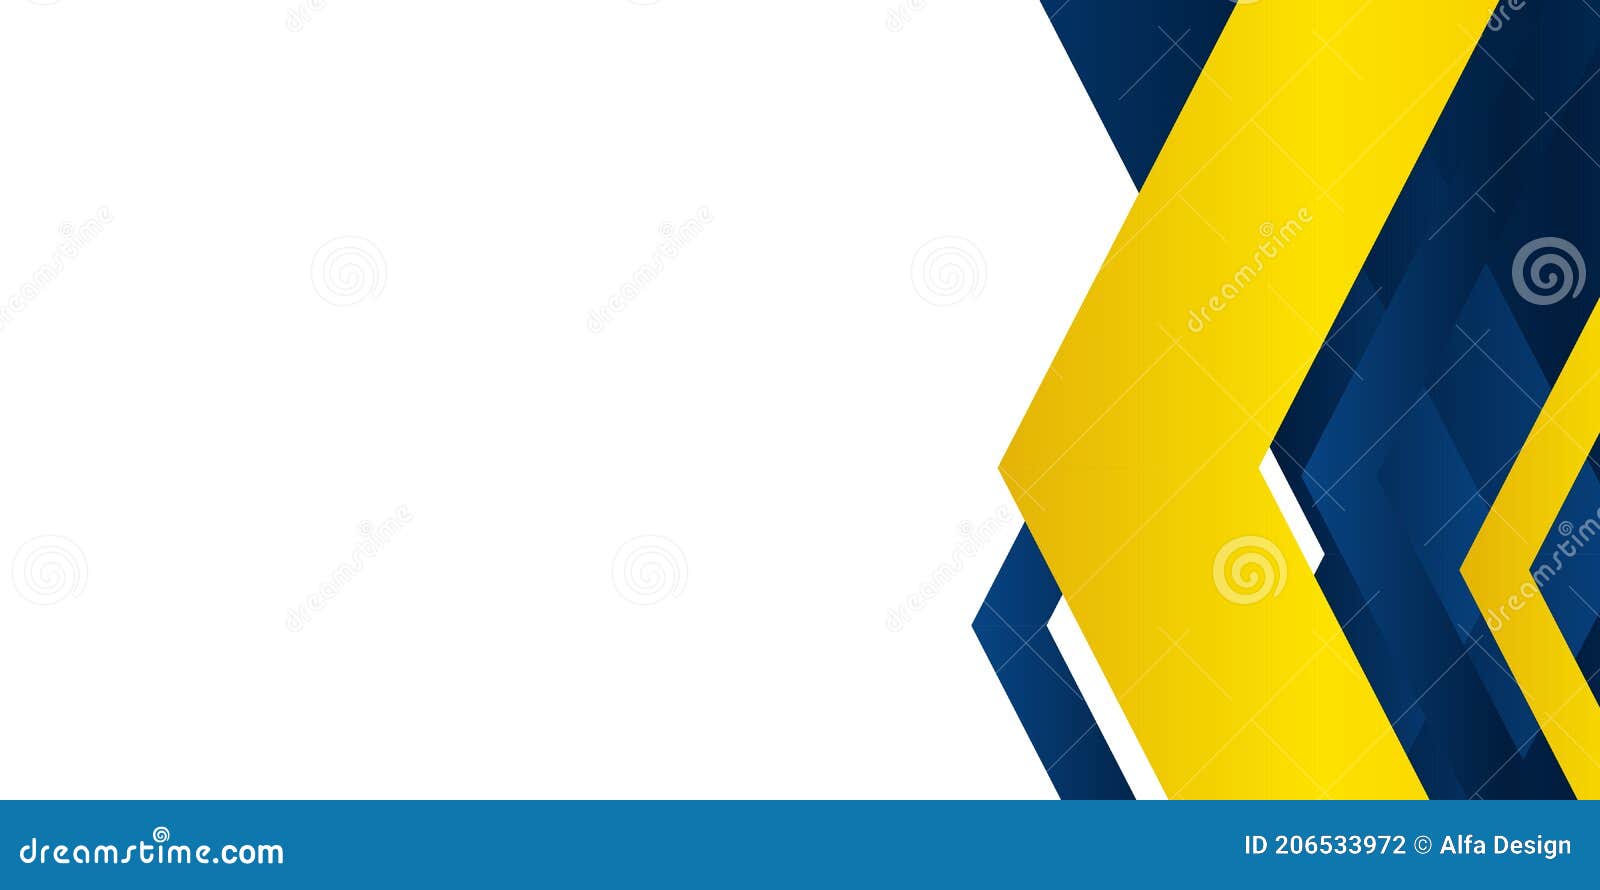 Một hình nền tam giác xanh đậm vàng sáng trừu tượng sẽ giúp trang web của bạn nổi bật và tạo ấn tượng cho khách hàng. Với những đường nét tuyệt đẹp, hình nền sẽ giúp tăng tính thẩm mỹ, thu hút sự quan tâm và nâng cao trải nghiệm truy cập của khách hàng.